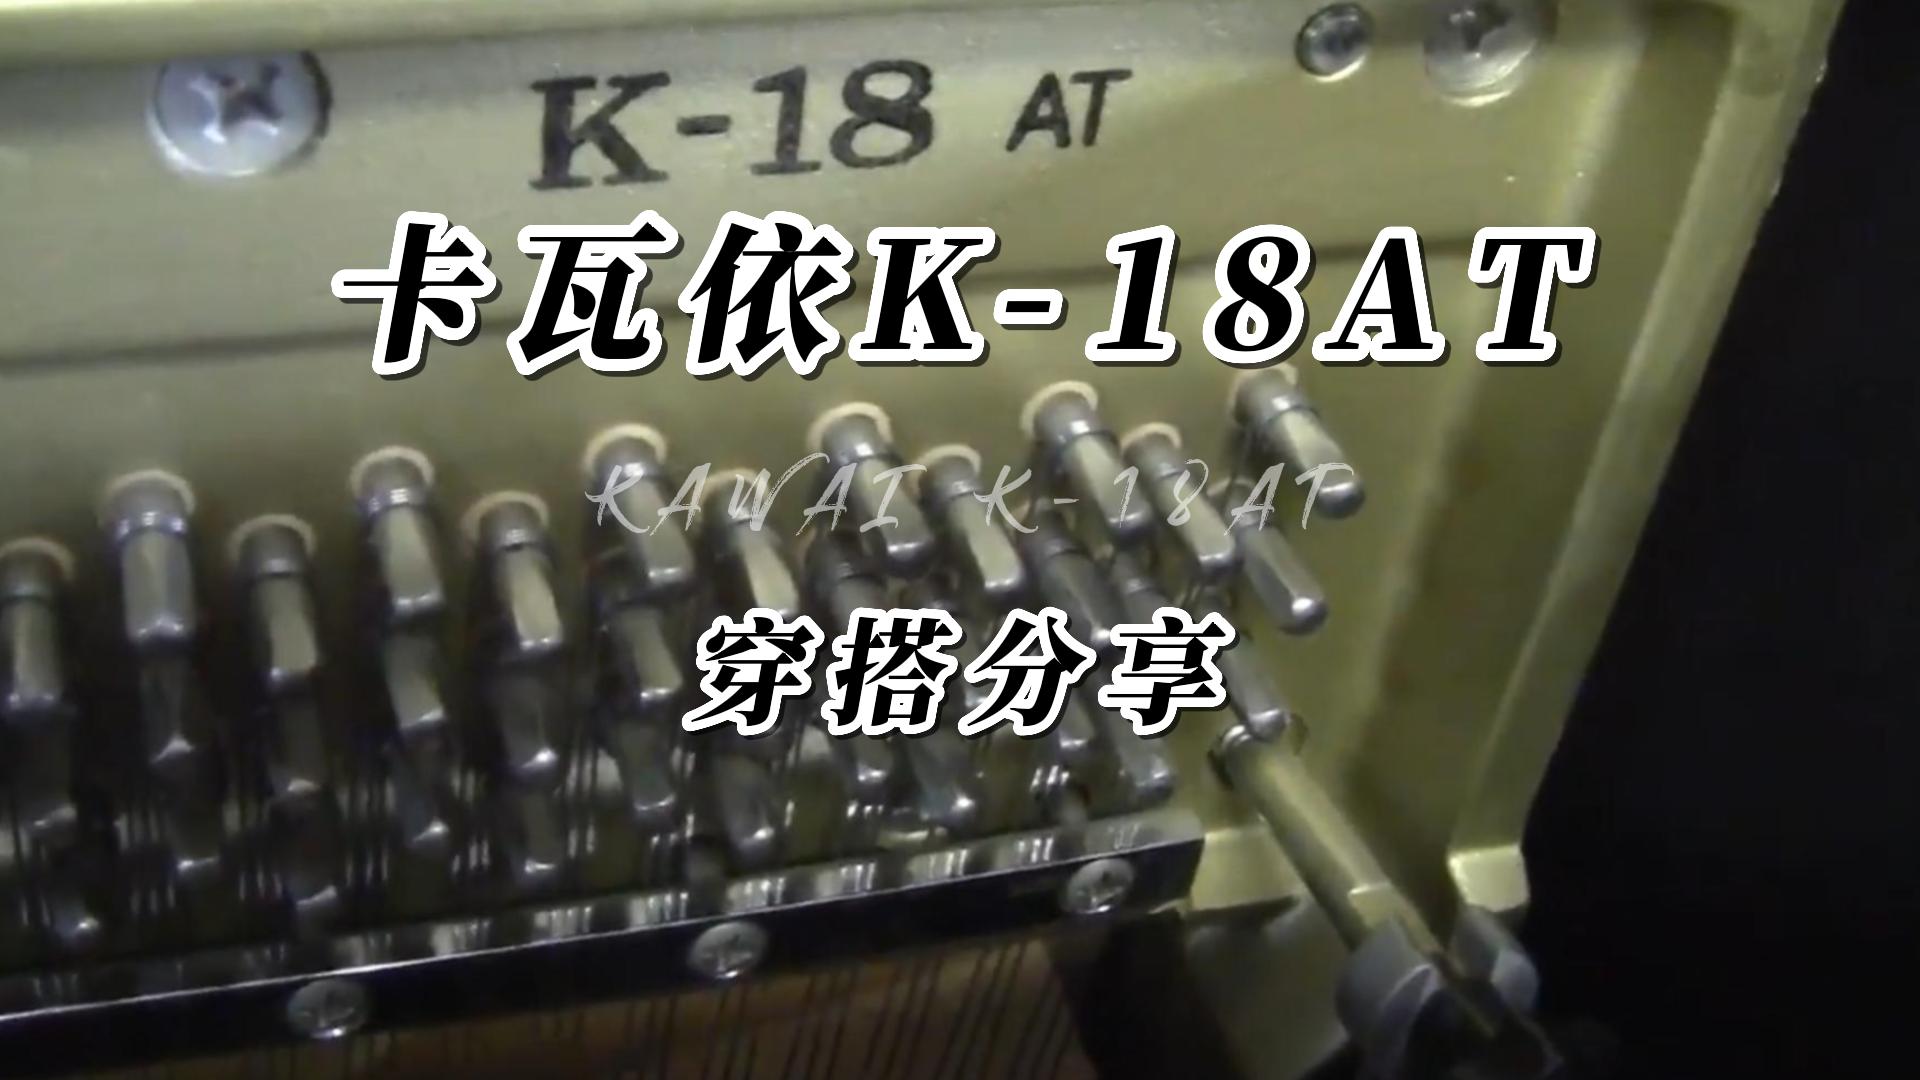 KAWAI 卡瓦依K-18AT静音钢琴弹奏测评-柏通琴行整理